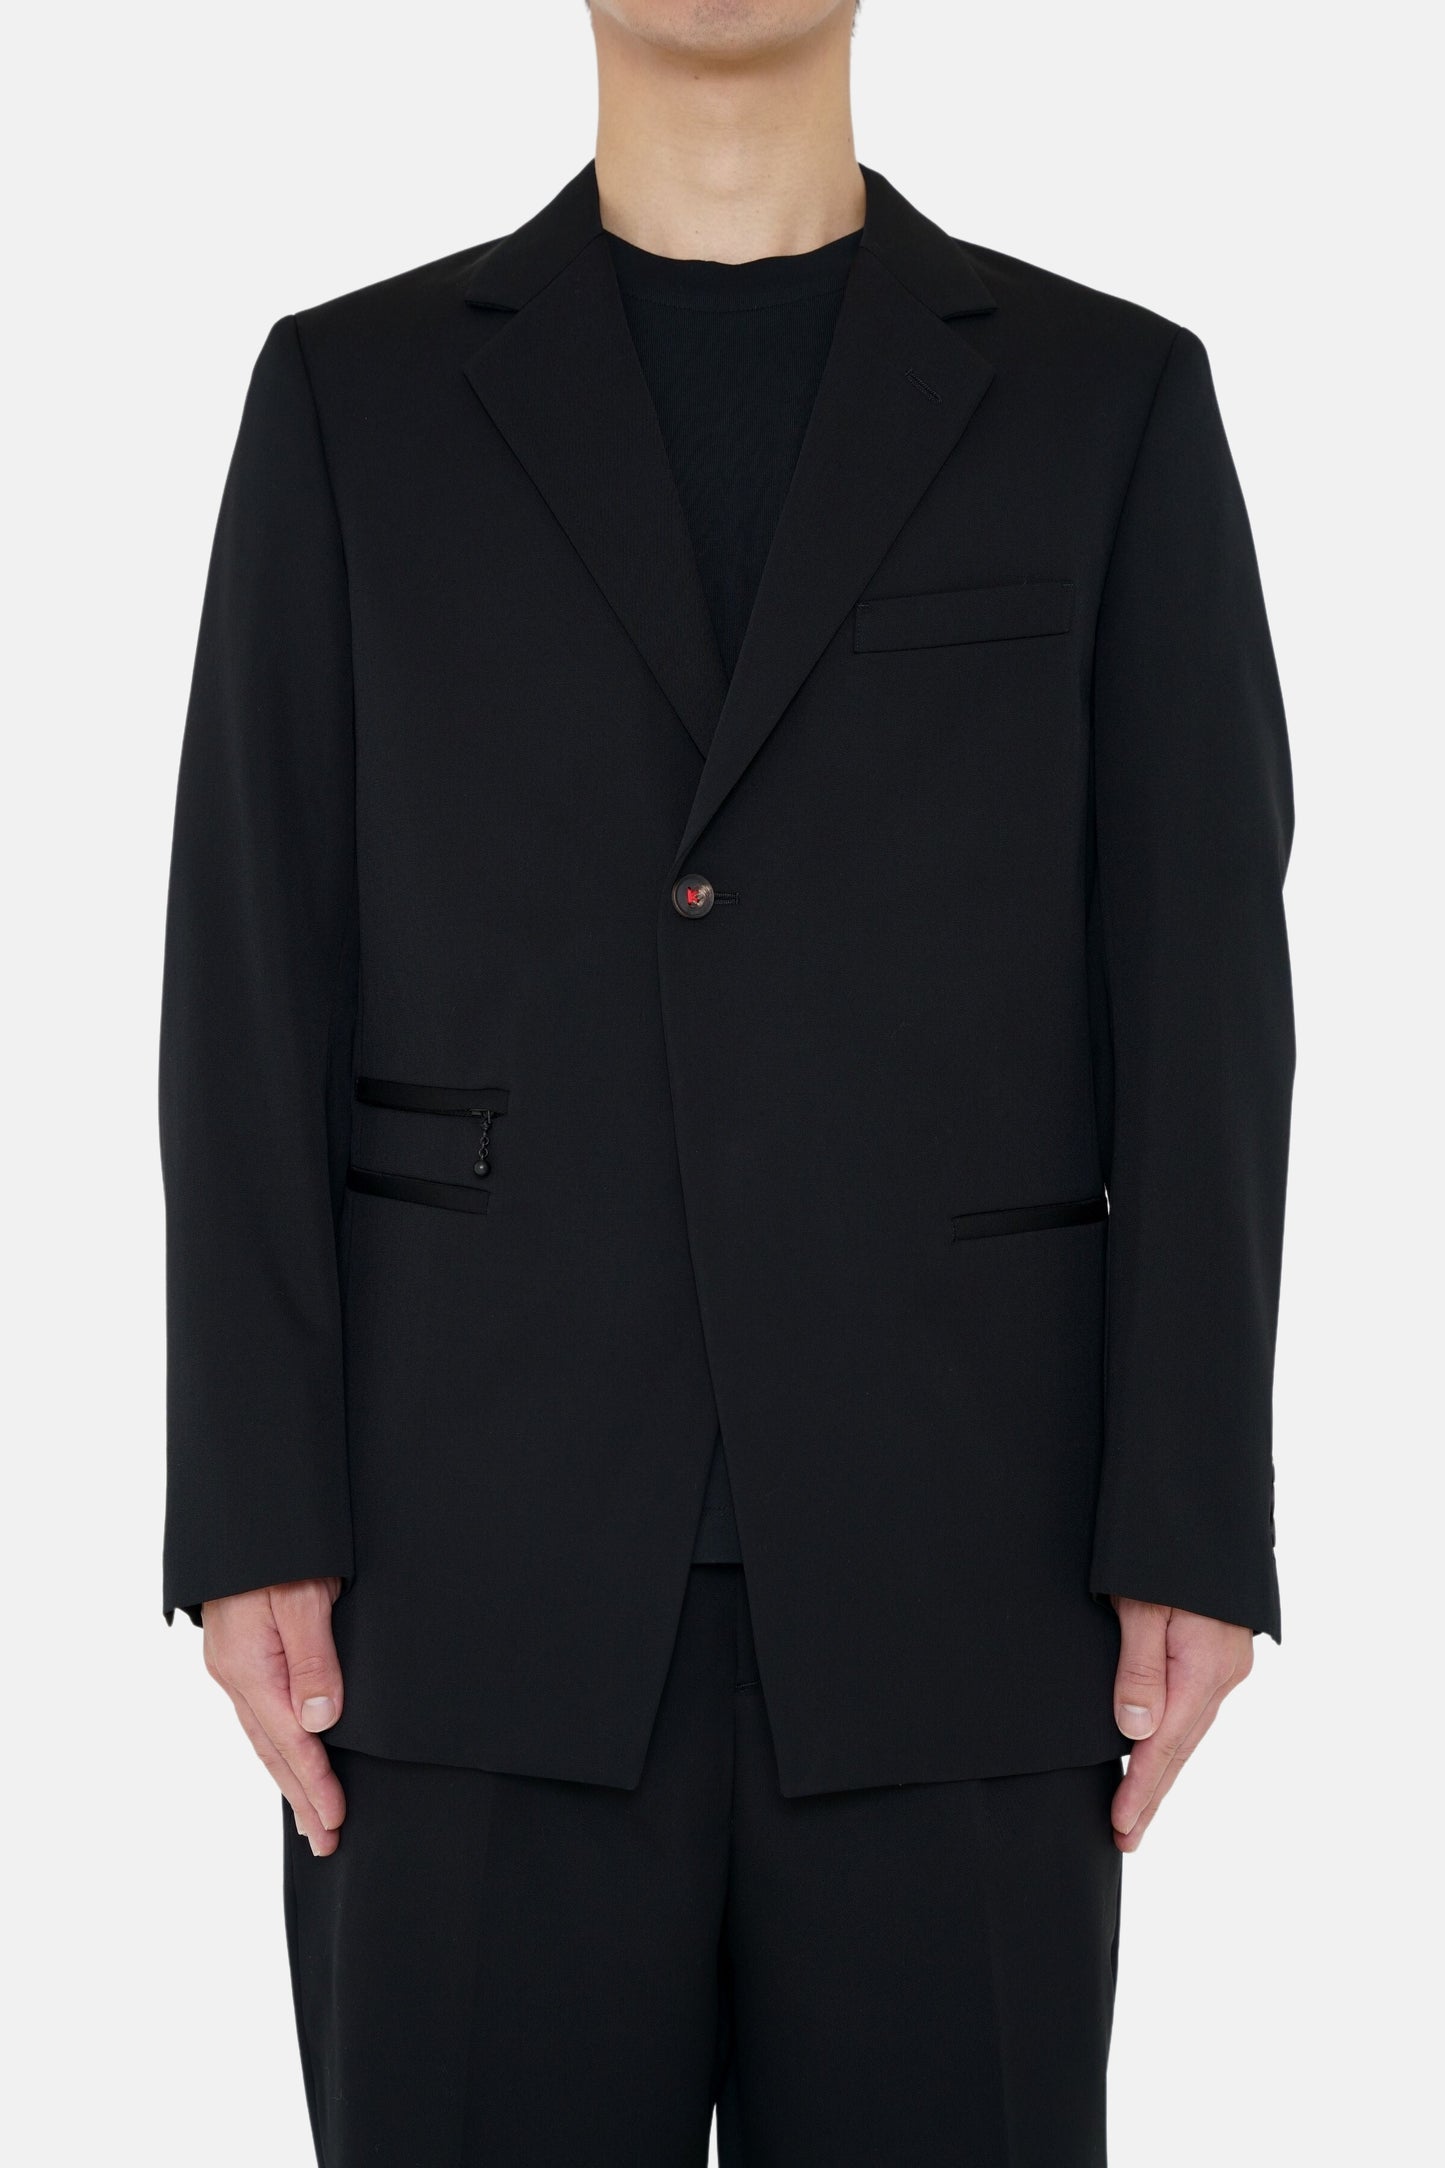 2B Single Tailored Jacket - Black